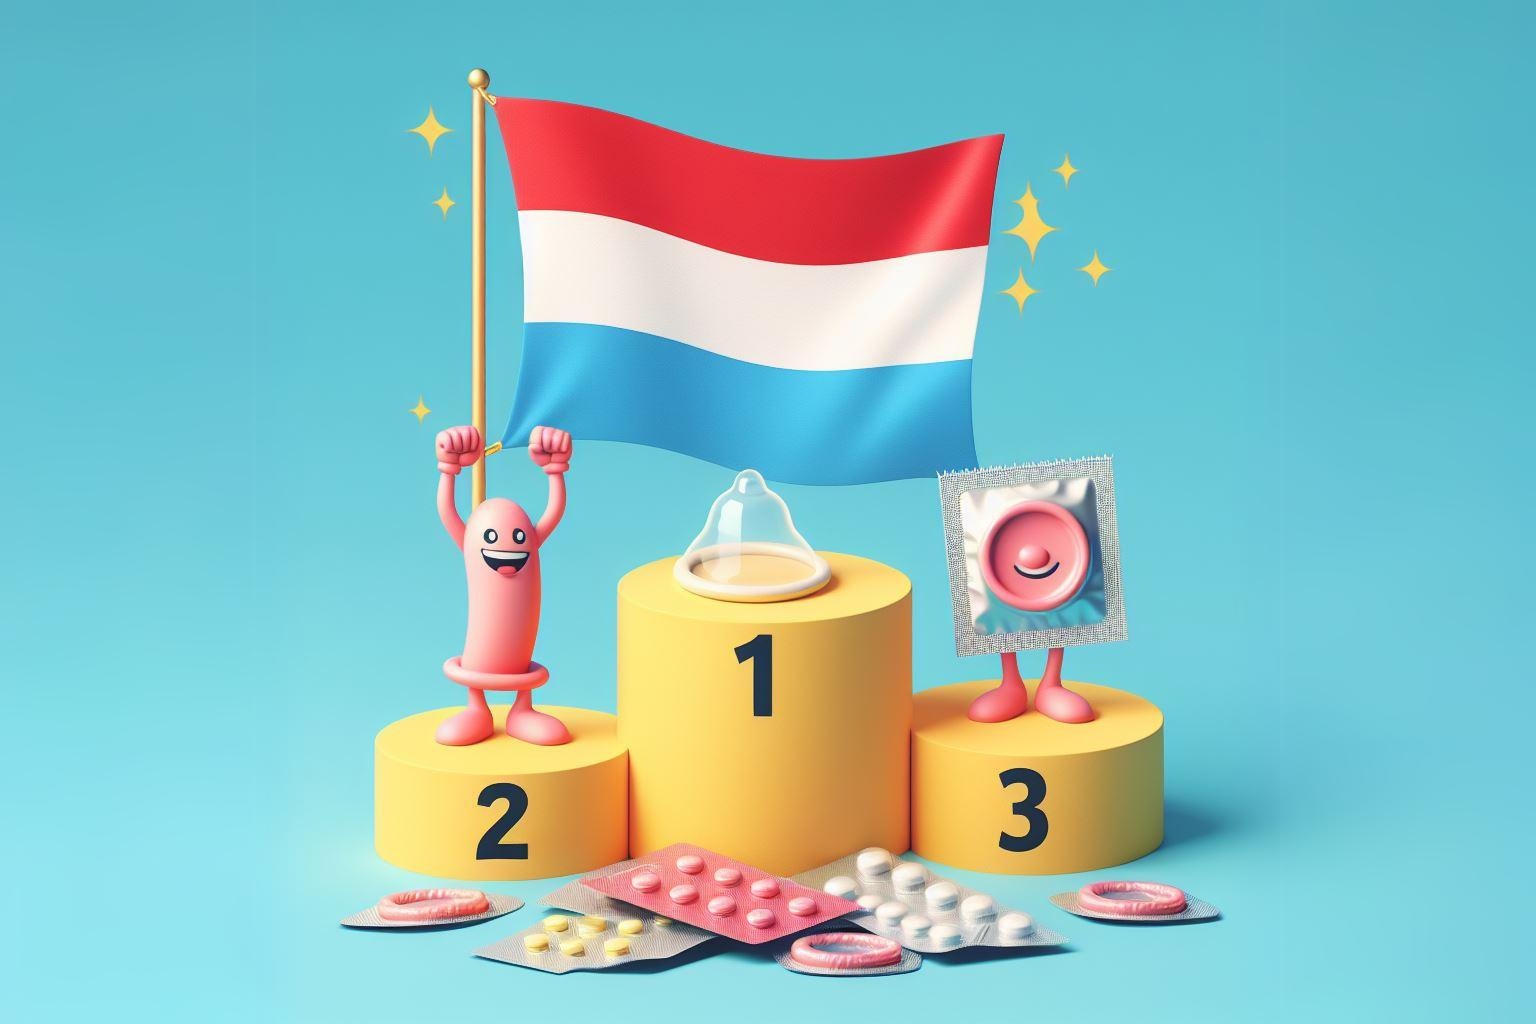 Steagul luxemburghez ca număr 1 pe un podium de învingători pe tema contracepției